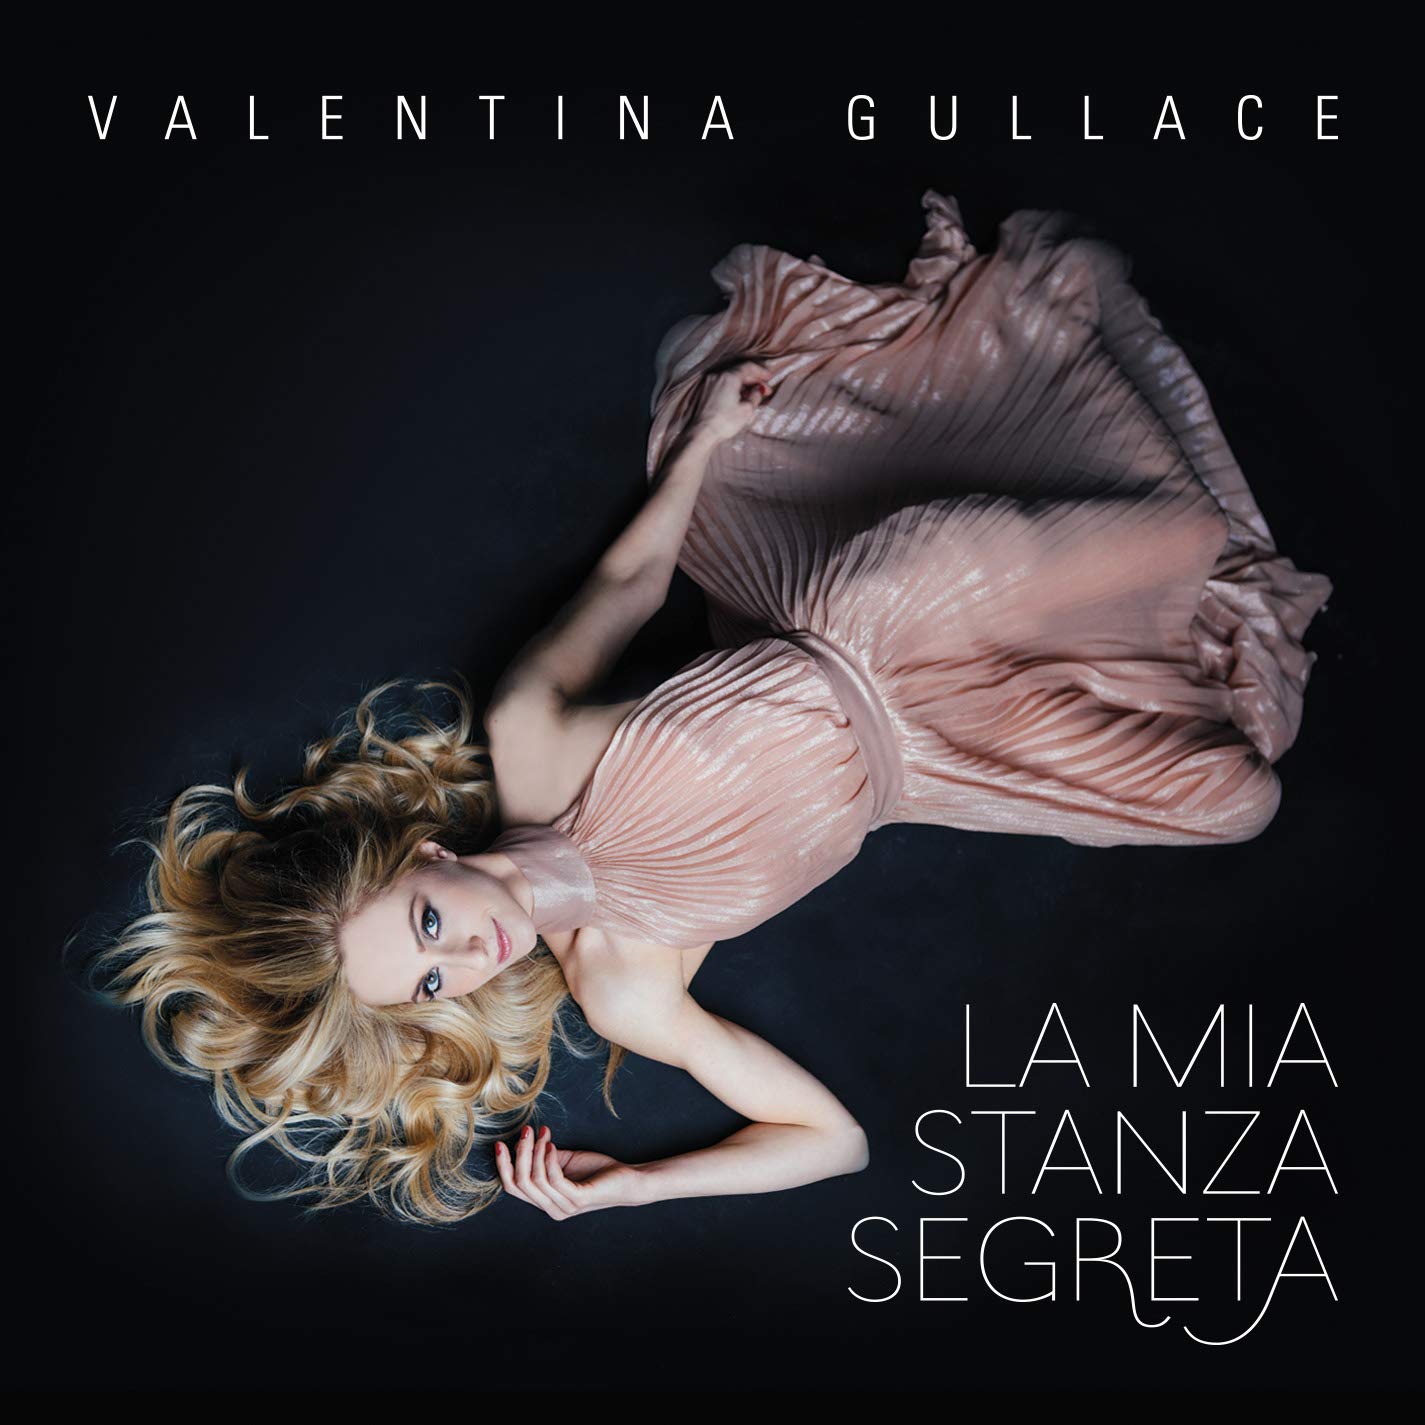 Musica Italiana, Recensioni. “La mia stanza segreta”, l’elegante esordio discografico di Valentina Gullace